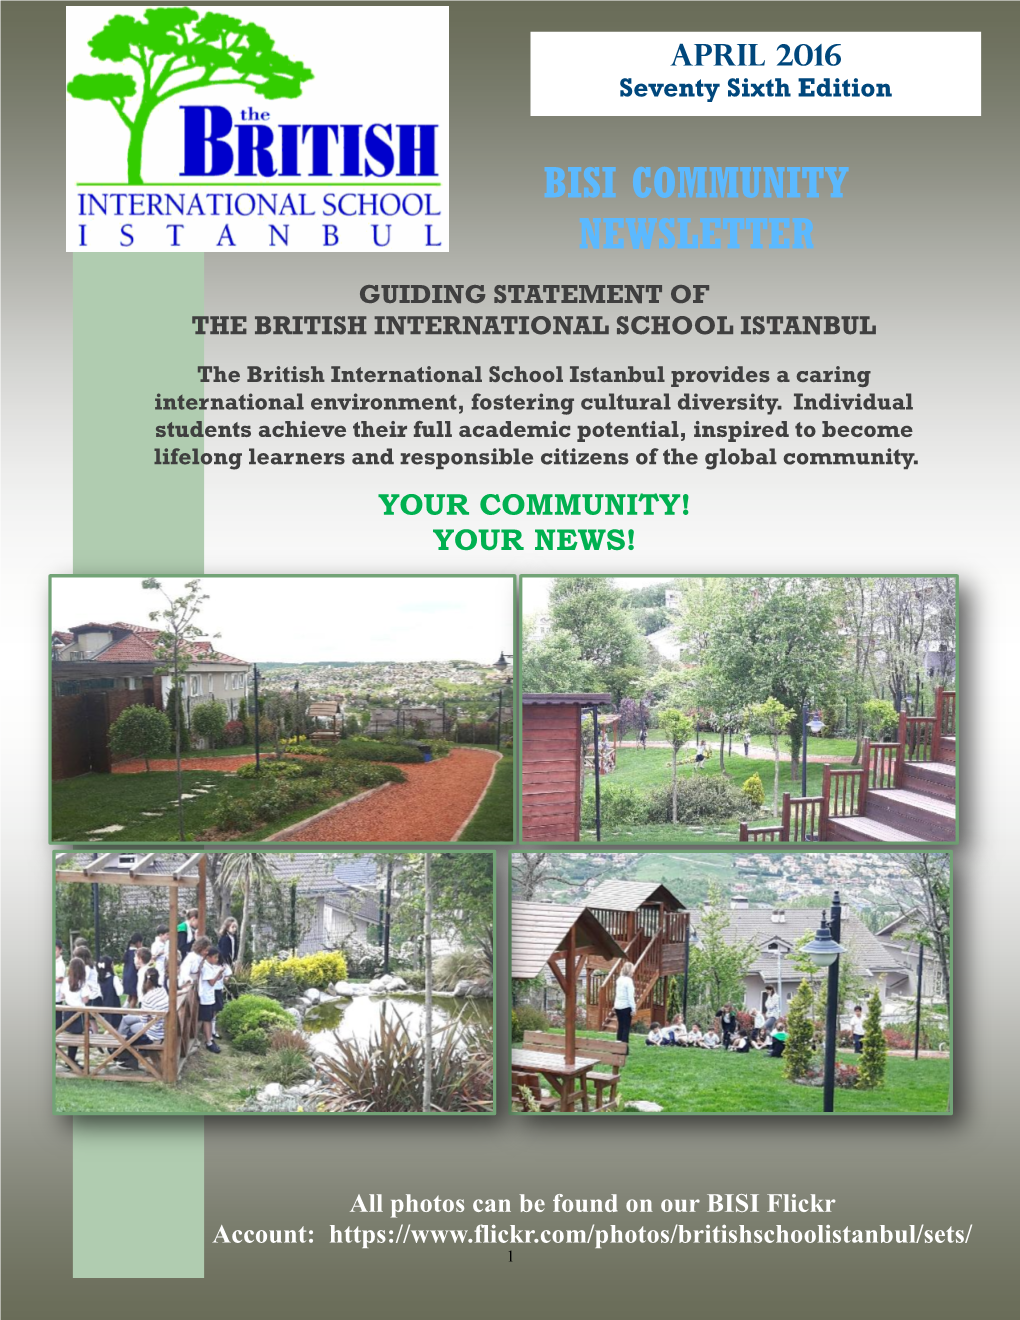 BISI Community Newsletter April 2016